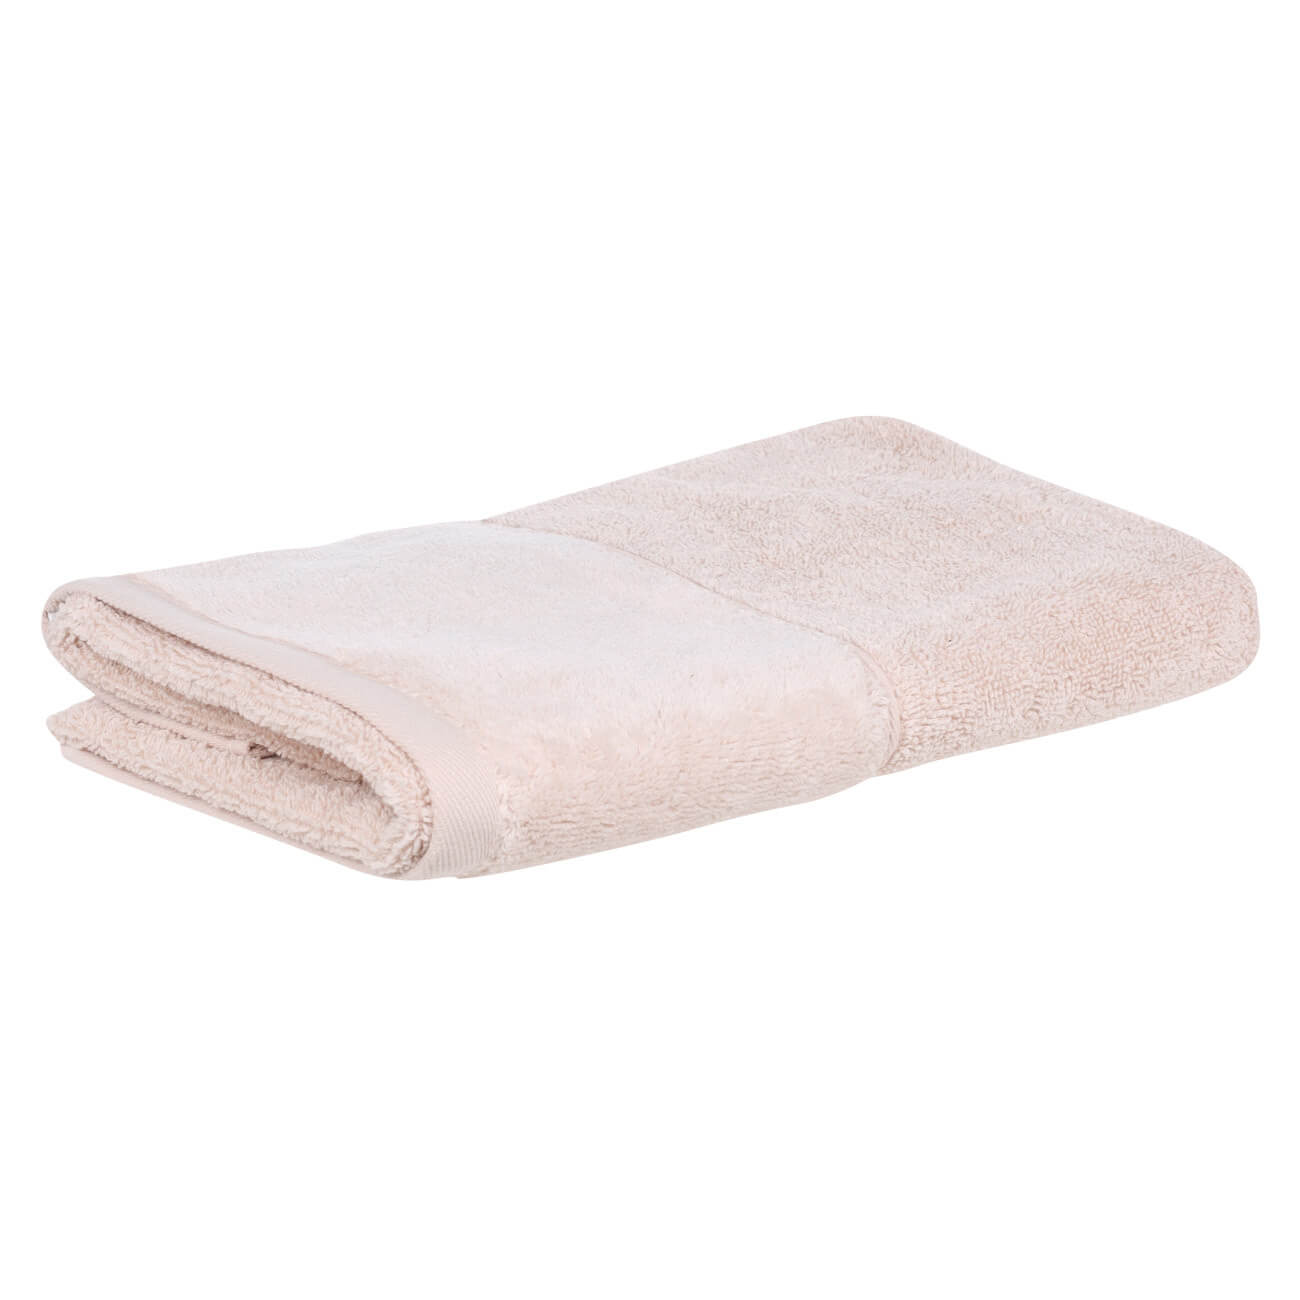 Полотенце, 50х90 см, хлопок, бежевое, Velvet touch полотенце eumenia 30x30 см бежевое